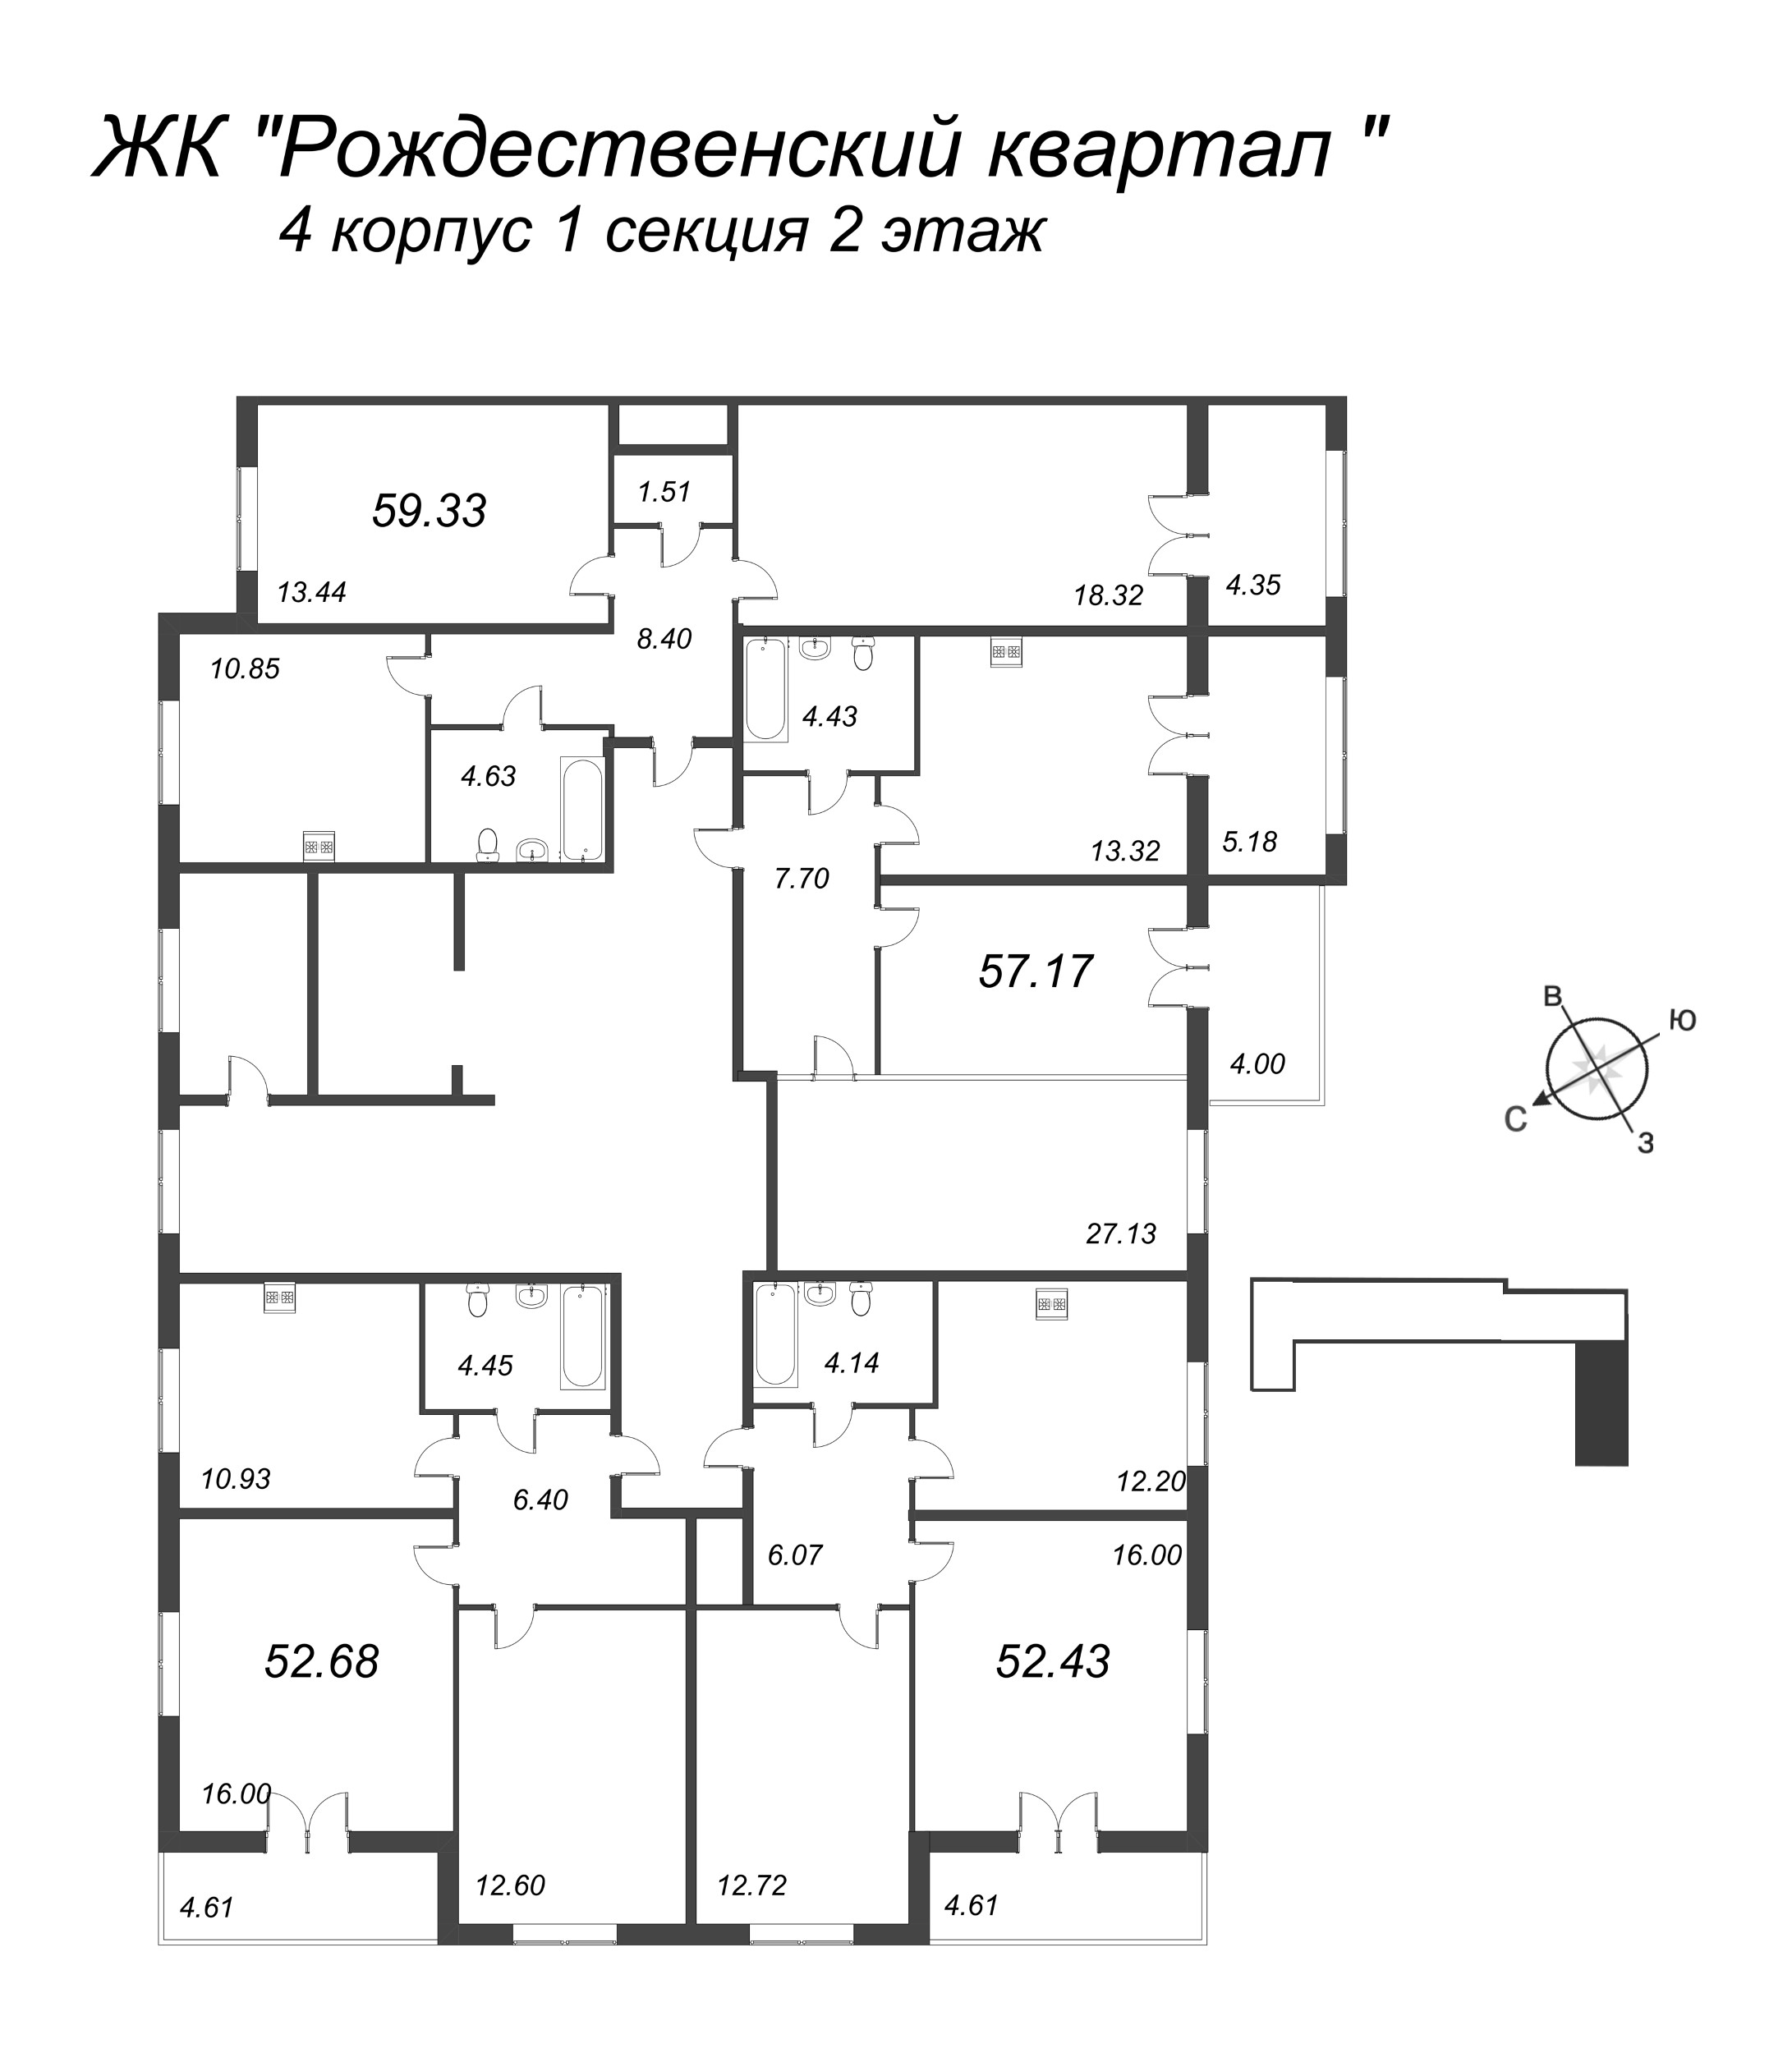 2-комнатная квартира, 52.43 м² в ЖК "Рождественский квартал" - планировка этажа